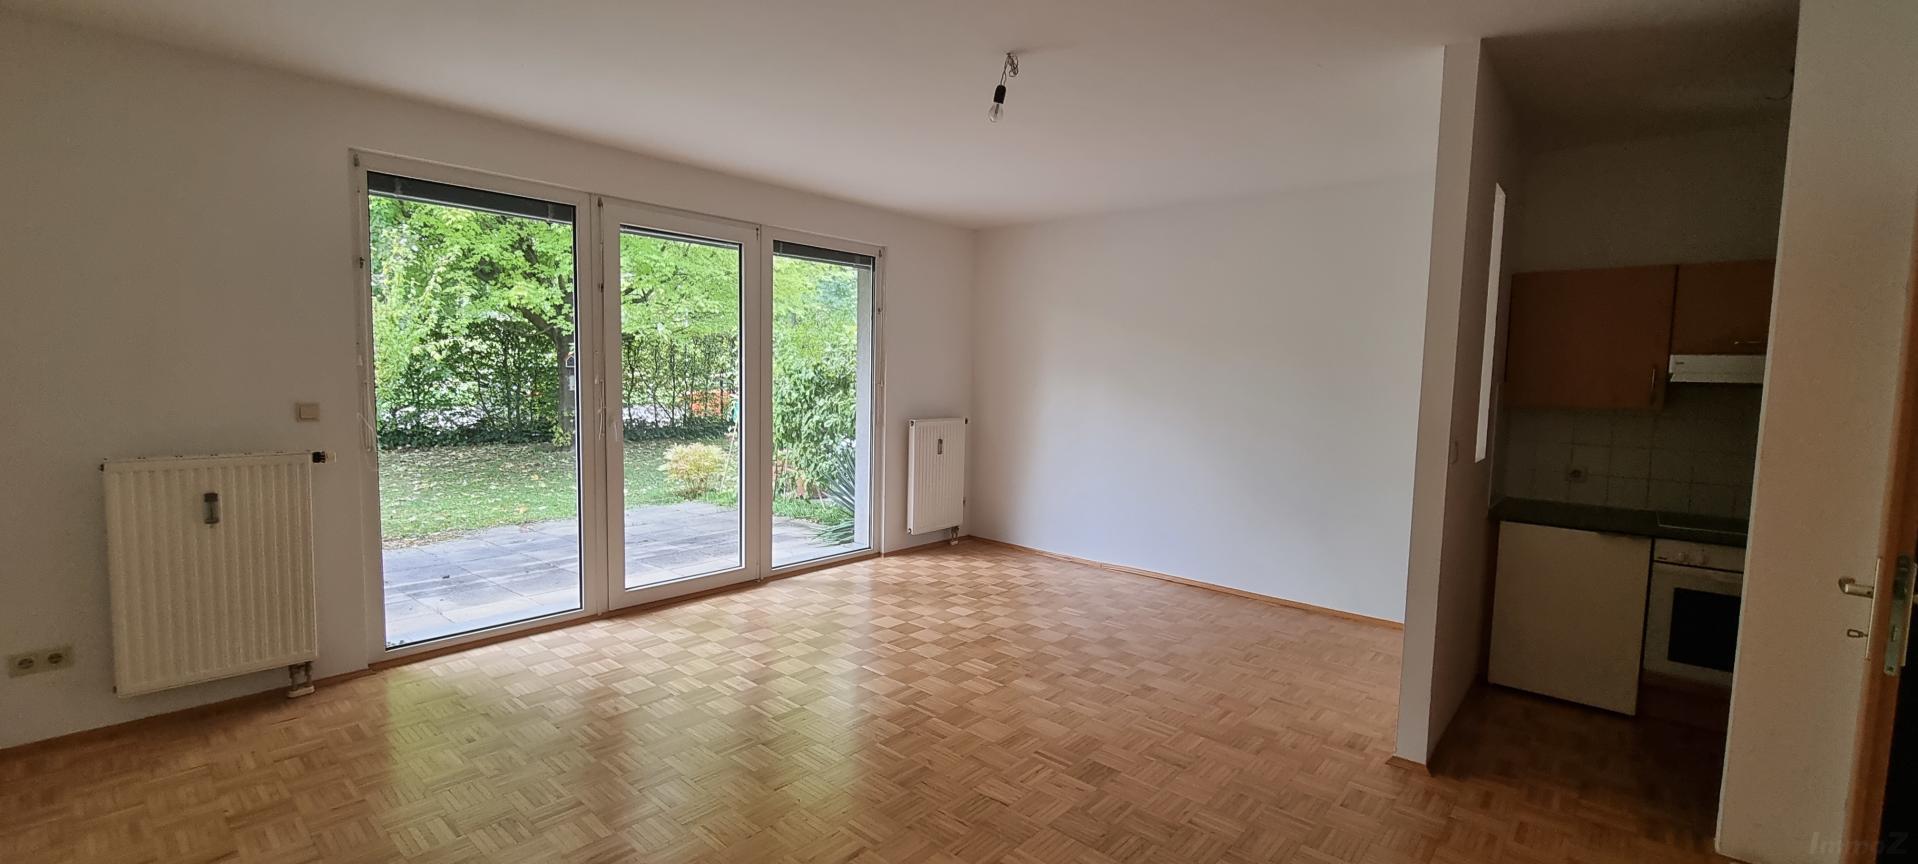 Wohnung zum Mieten: 8010 Graz,03.Bez.:Geidorf - SSK W004 Wohnzimmer-Terrasse